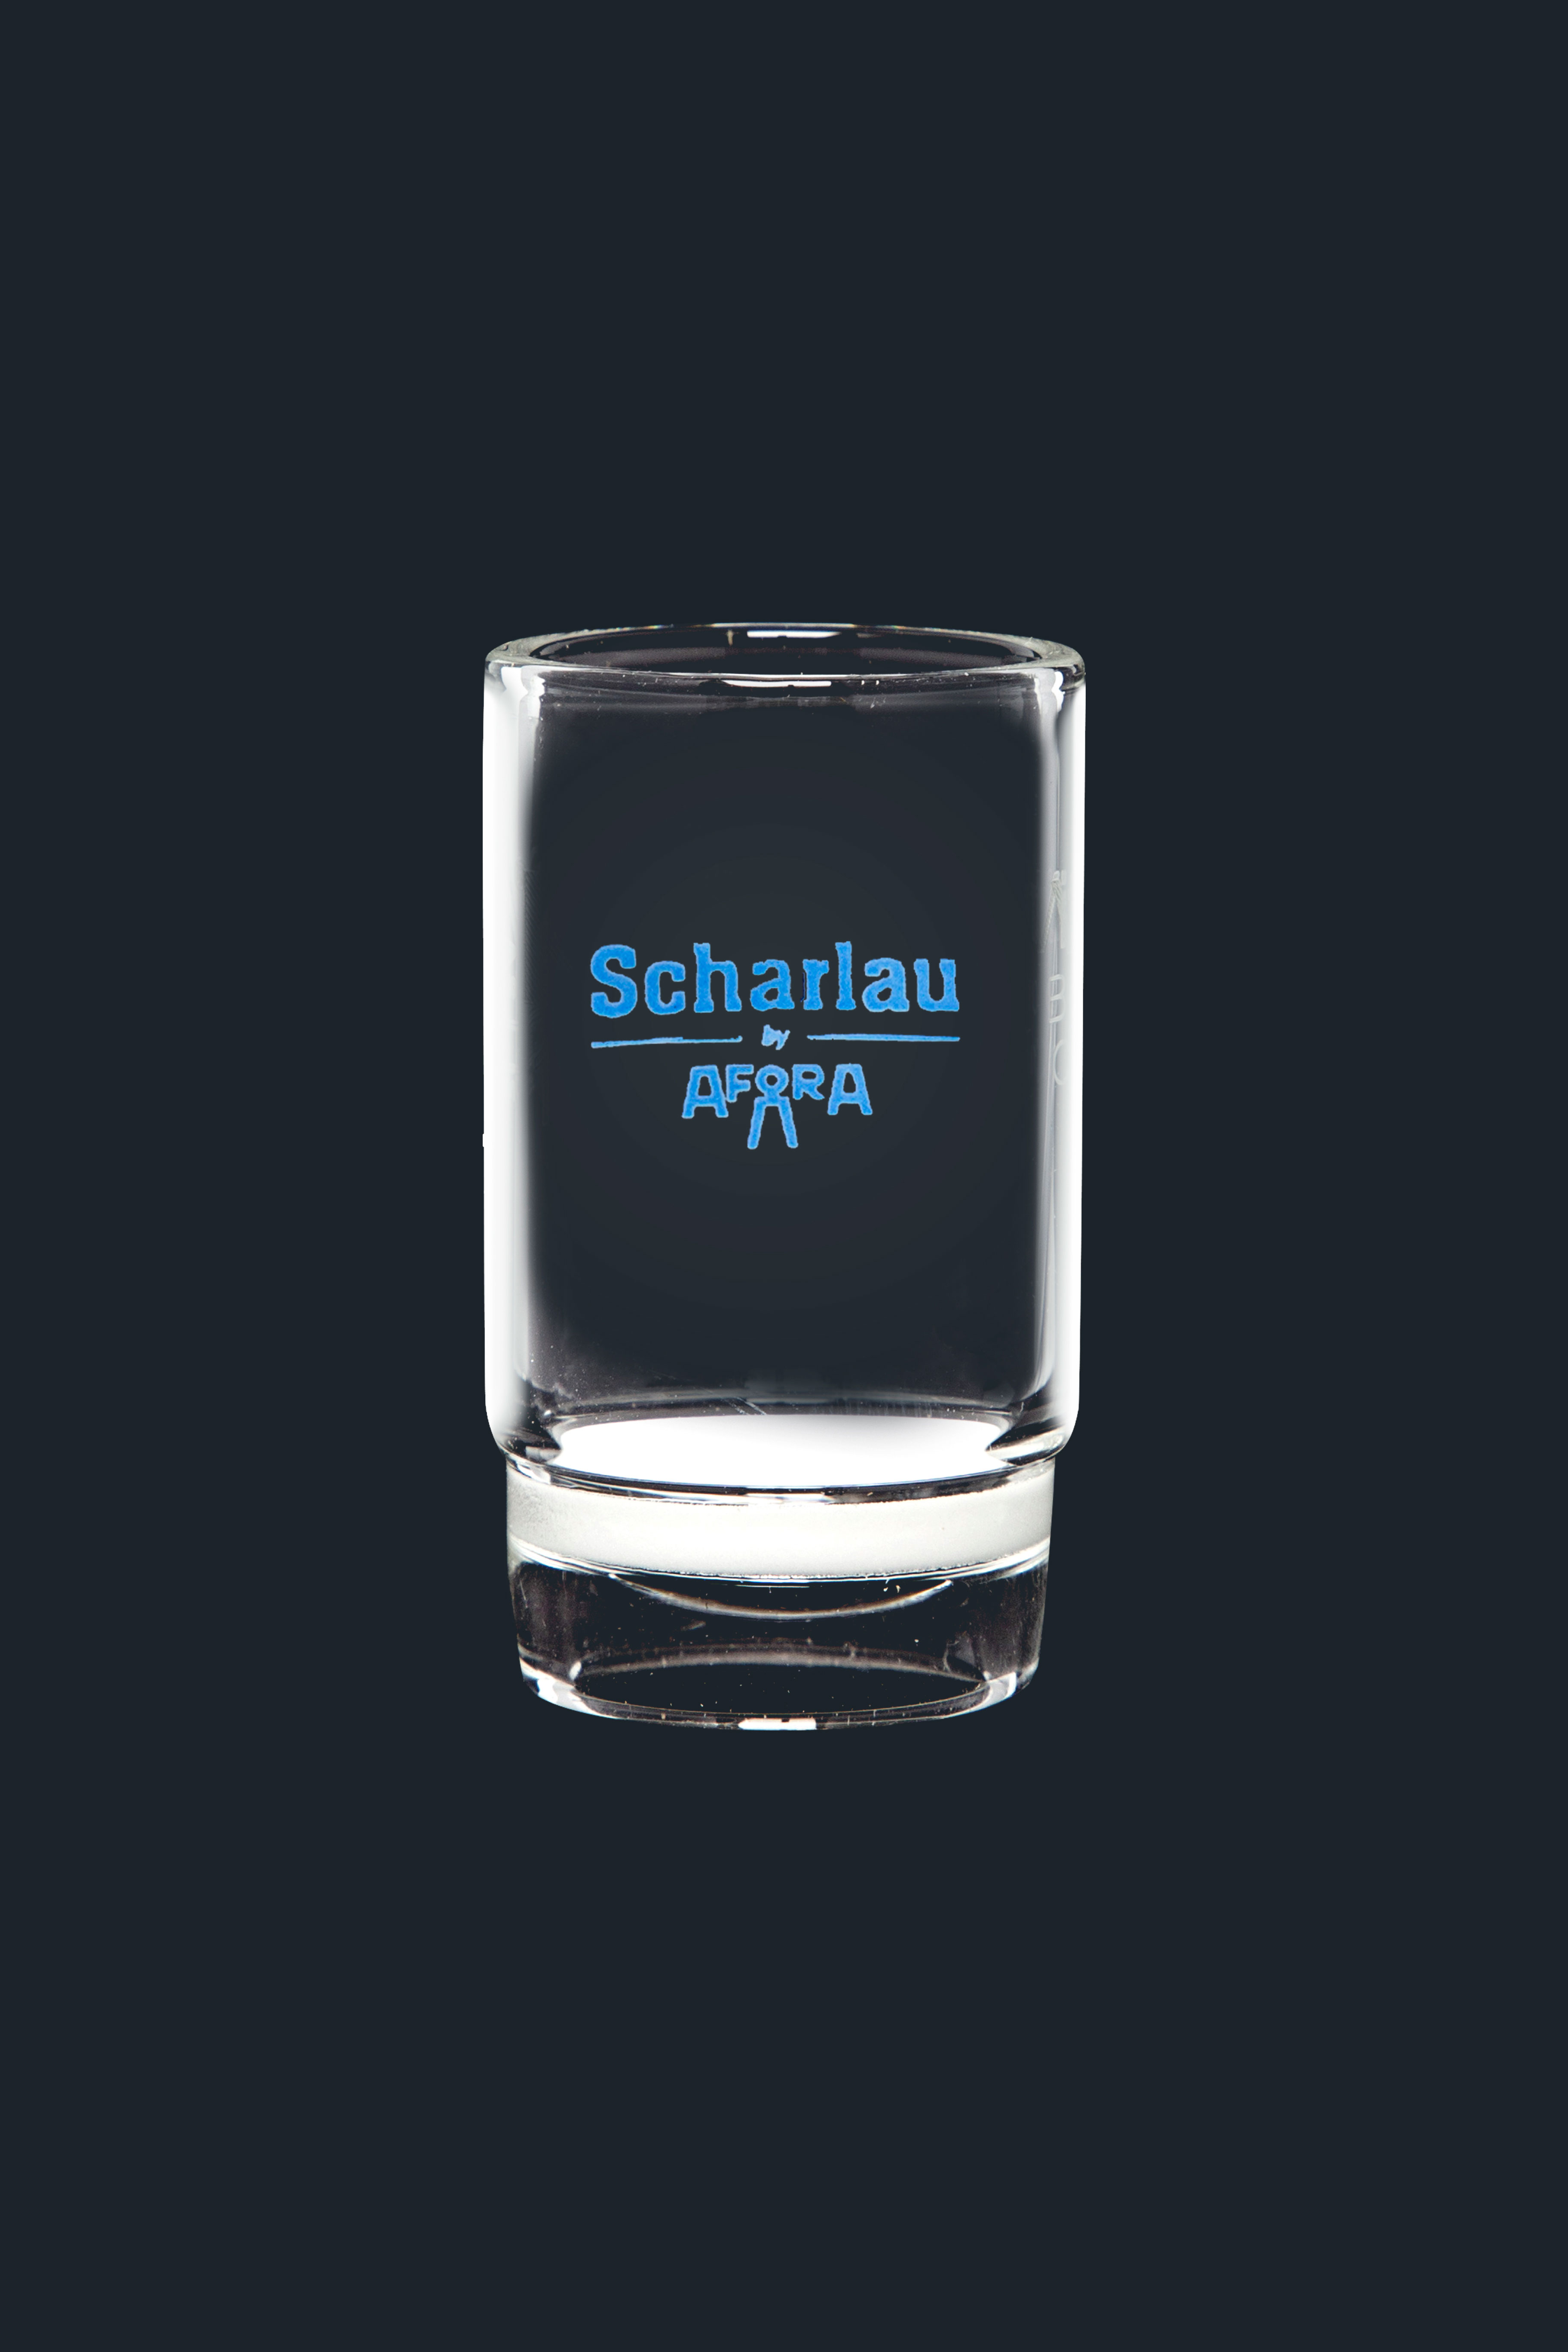 Crisoles de vidrio con placa filtrante. SCHARLAU. Cap. (ml): 8. Placa Ø (mm) : 20. Ø (mm): 24. Poro: 1. Altura (mm): 42